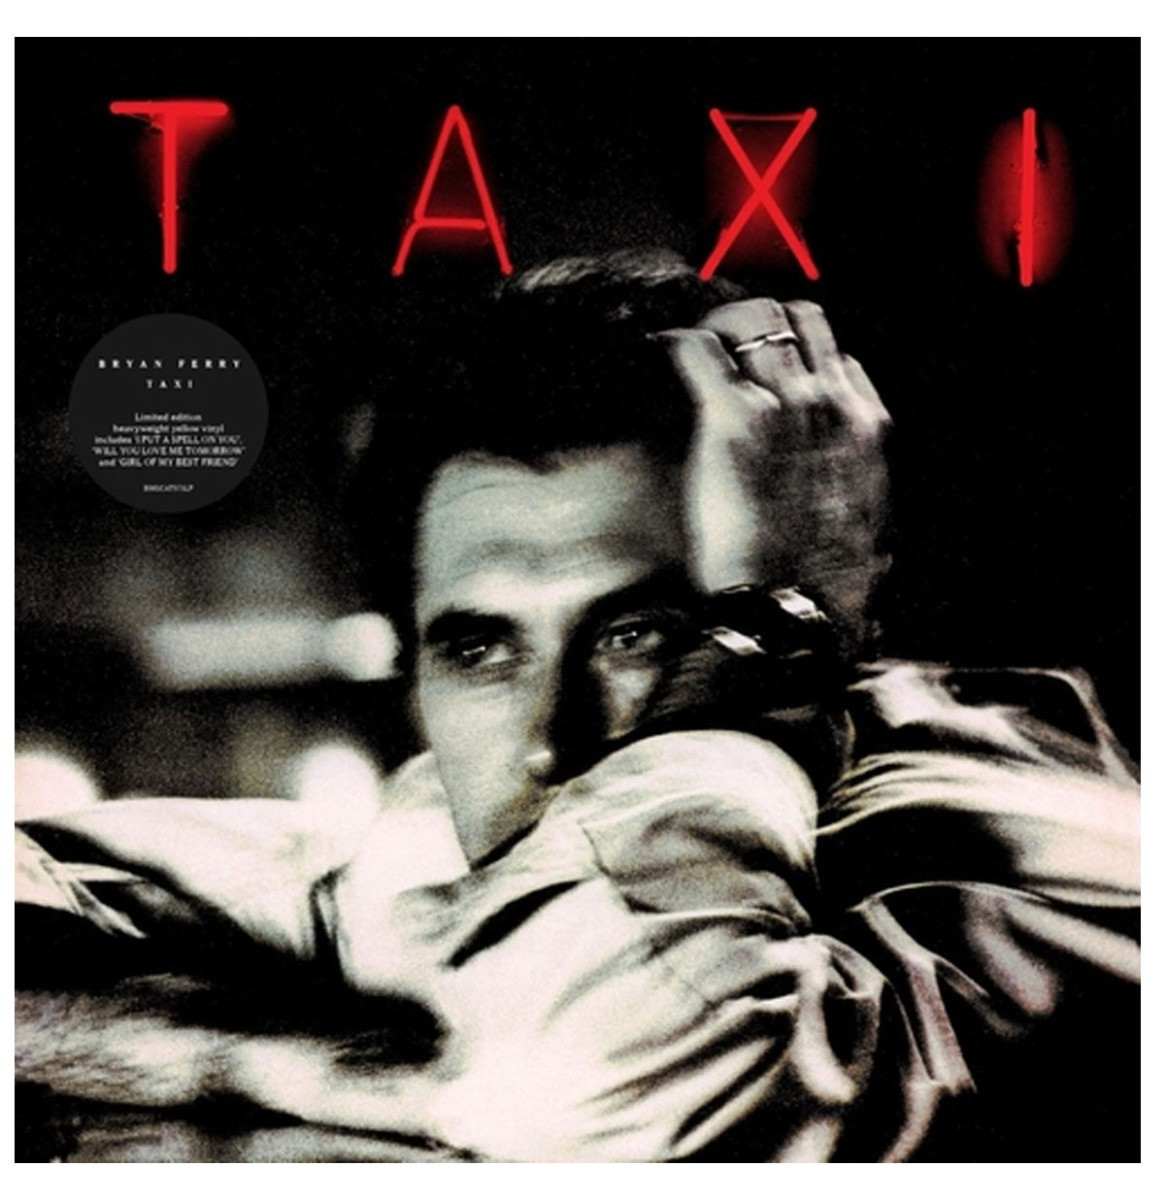 Bryan Ferry - Taxi LP - Beperkte Oplage - Geel Gekleurd Vinyl